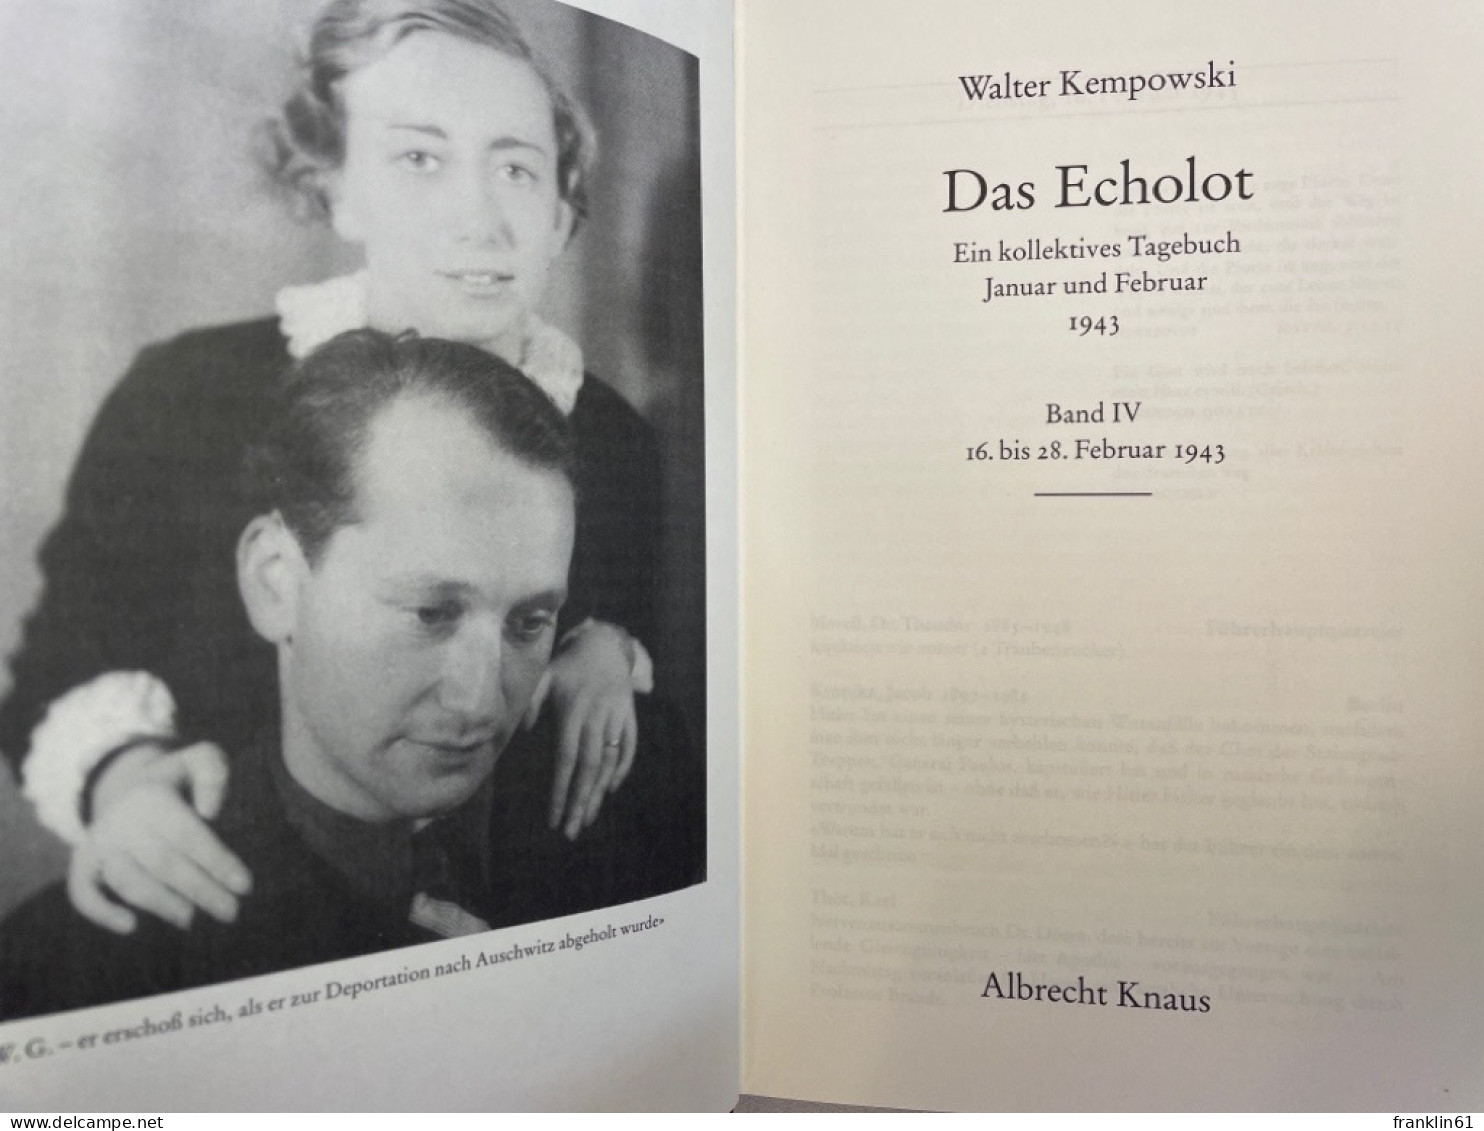 Das Echolot. Ein kollektives Tagebuch. Band 1 bis 4 KOMPLETT.